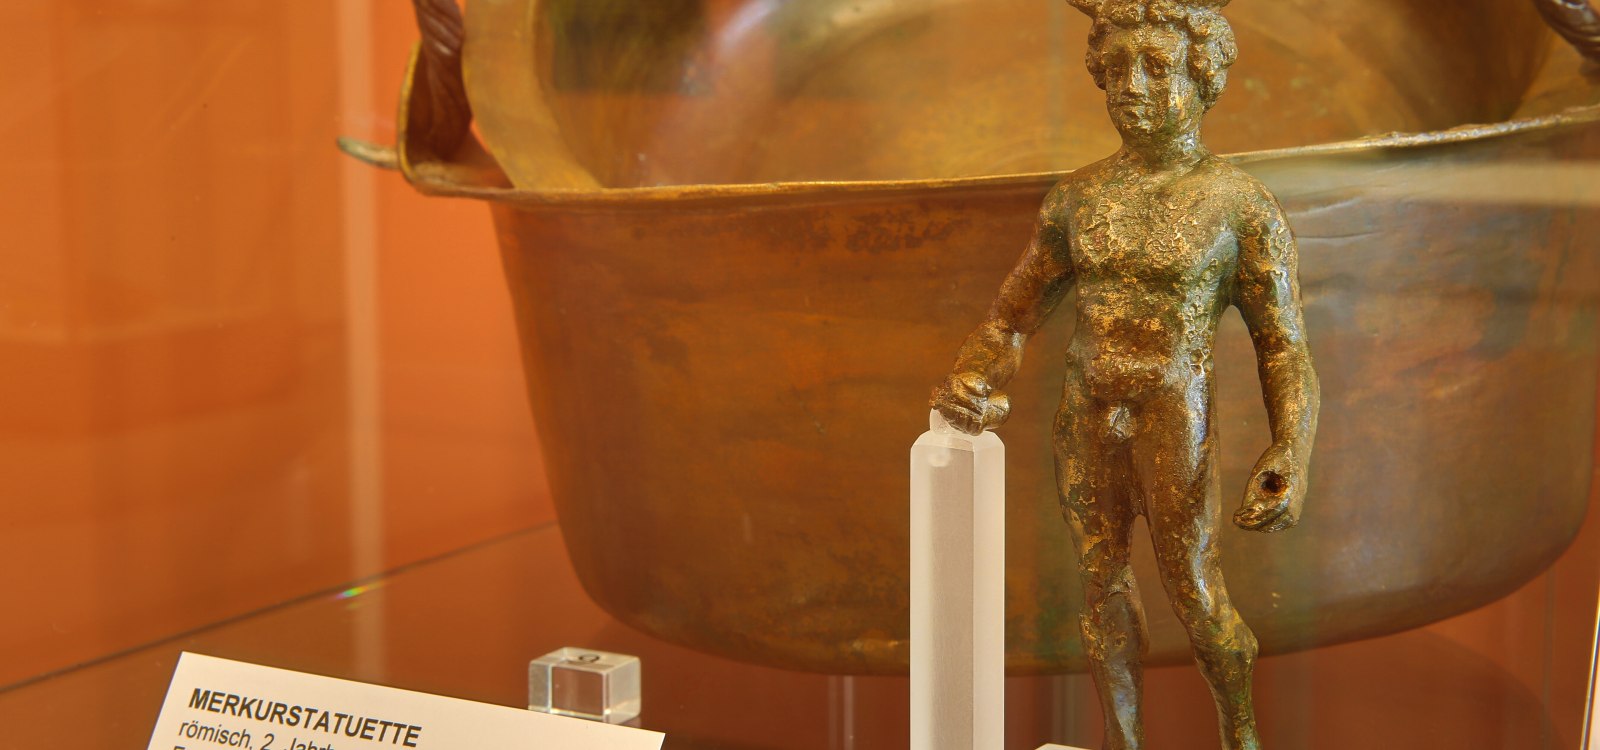 In der Abteilung Römerzeit gibt es viele große und kleine Objekte zum Entdecken., © Rainer Oppenheimer